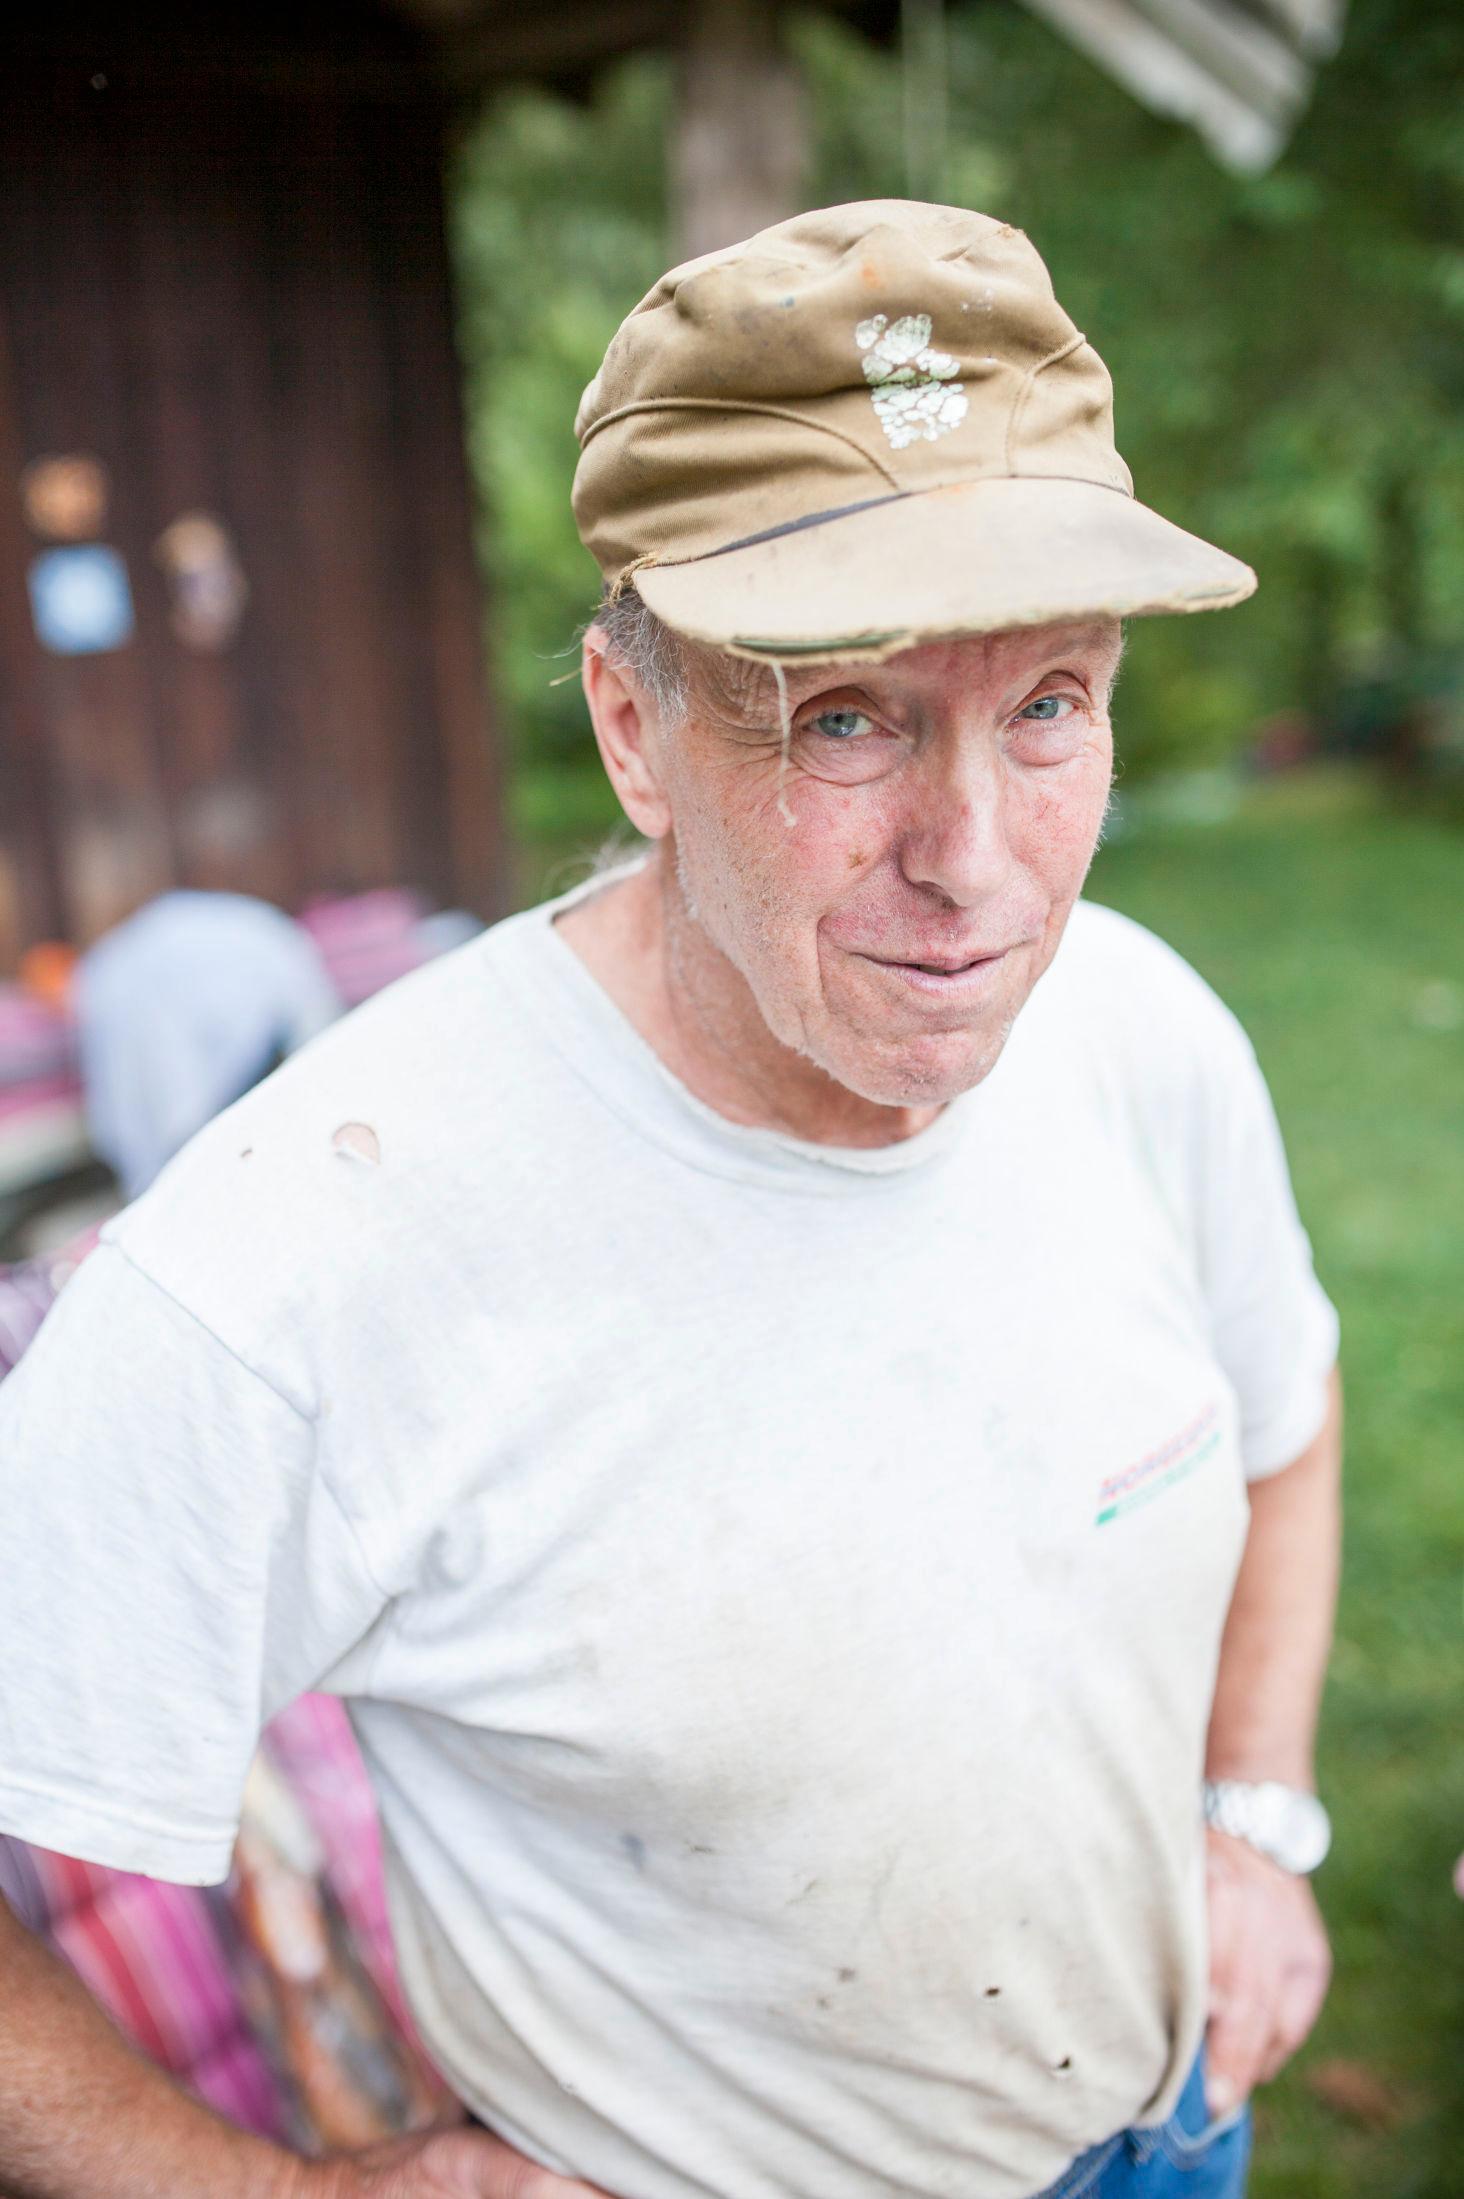 BONDEN: Johan Persbråten (68) har vært bonde hele sitt liv og har sterke meninger om hvordan gård helst bør drives. I 2013 fikk han pris av naturvernforbundet for sin innsats med å holde kulturlandskapet i hevd. Han er også den siste bonden som utelukkende livnærer seg av landbruk i Bærum. Foto: Magnus Ross